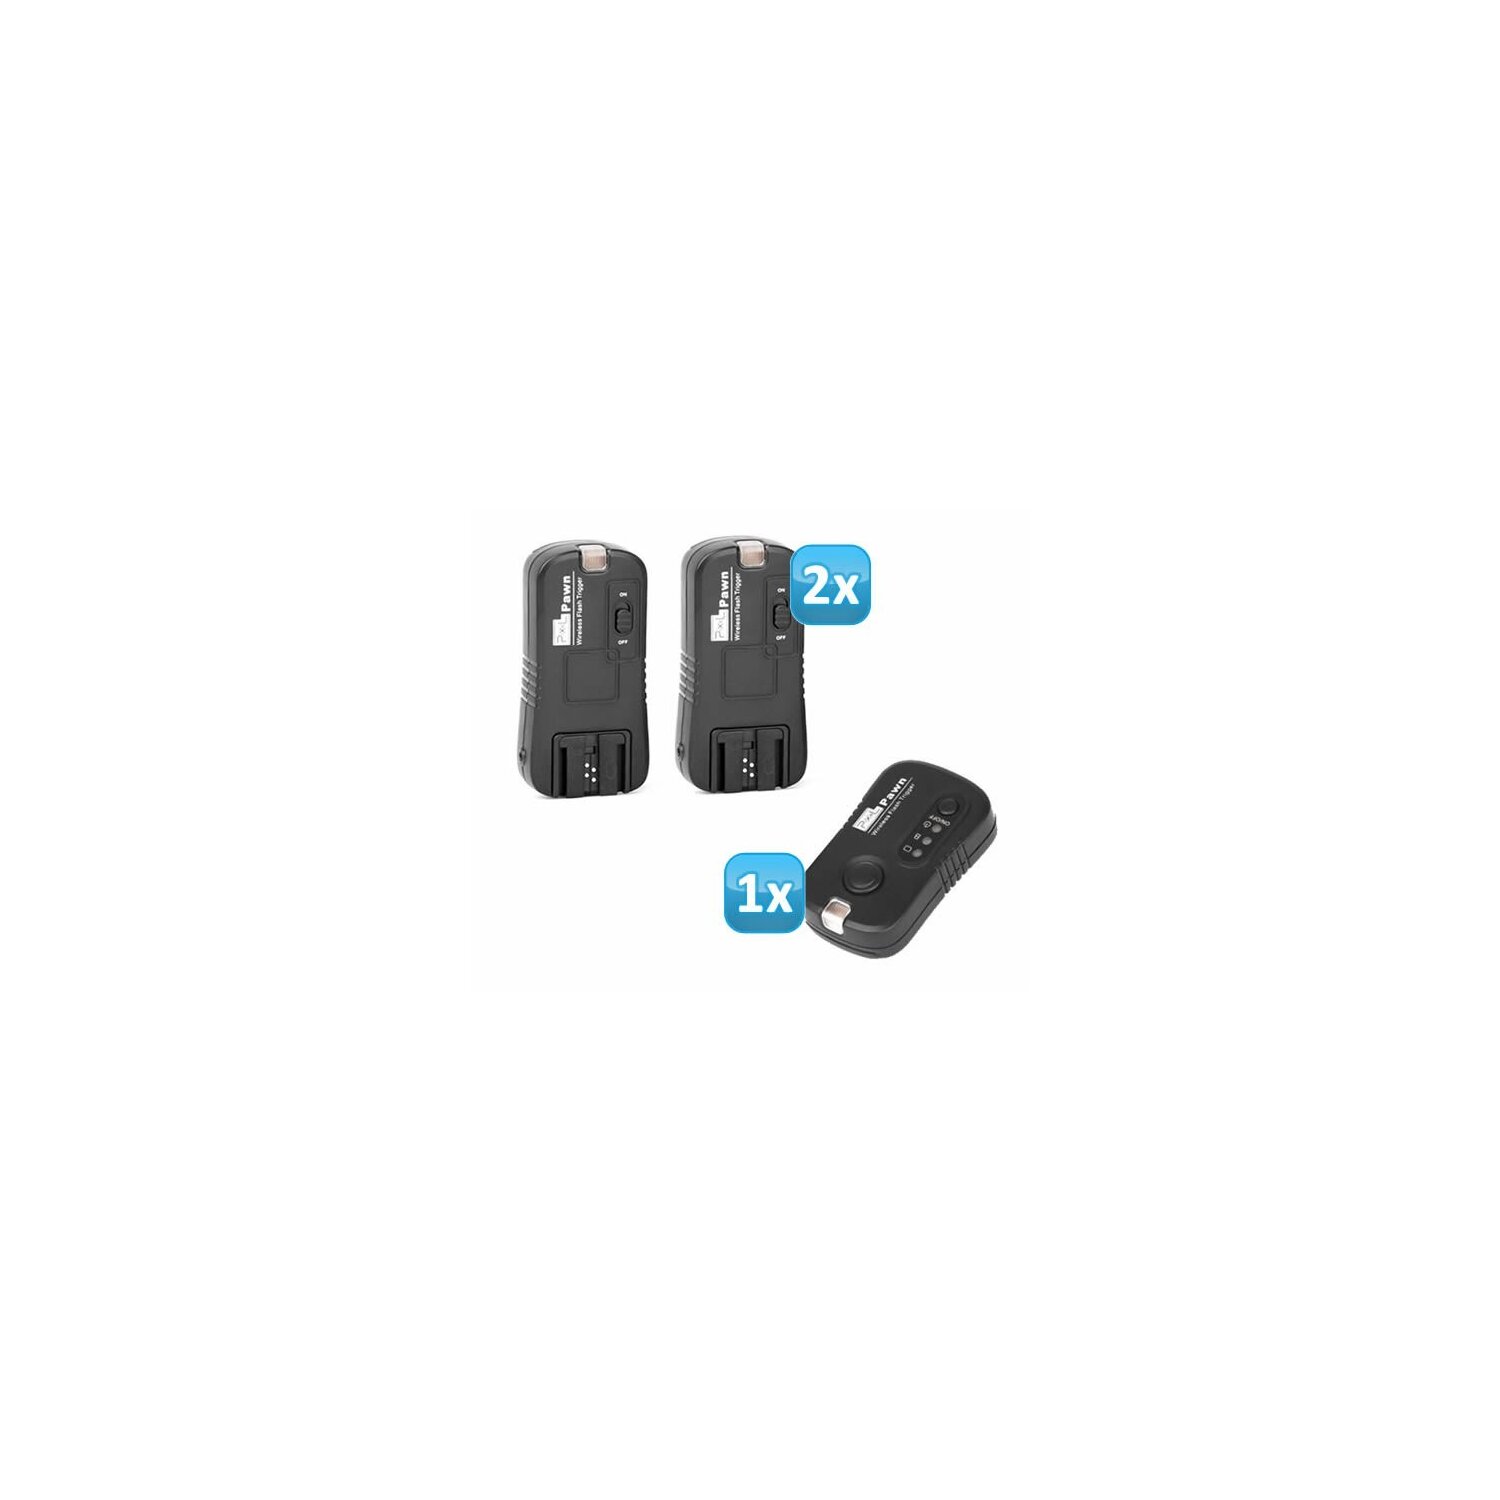 Pixel Pawn TF-363 Funk Blitzauslöser Set mit 2 Empfängern bis 100m kompatibel mit Sony und Minolta Blitzgeräte - Funkauslöser Kamera- und Blitz